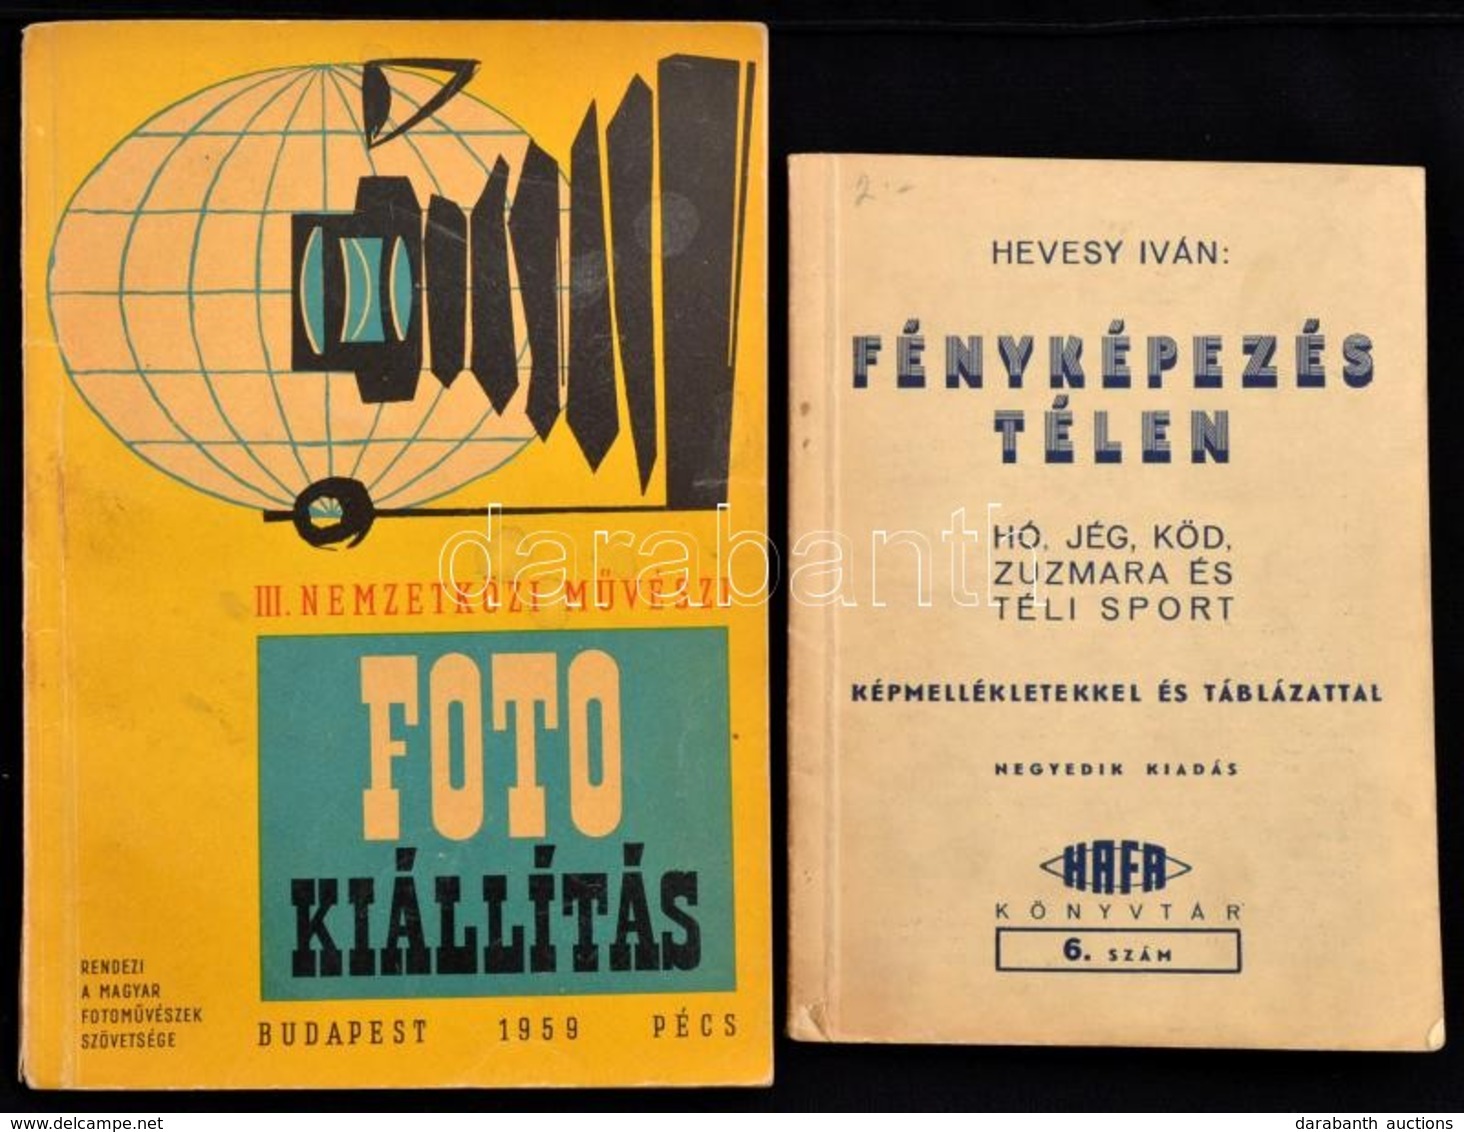 Hevesy Iván: Fényképezés Téten. Képmellékletekkel és Táblázattal. Hafa, Cca 1930. 32p.  + 1959 III. Nemzetközi Művészi F - Zonder Classificatie